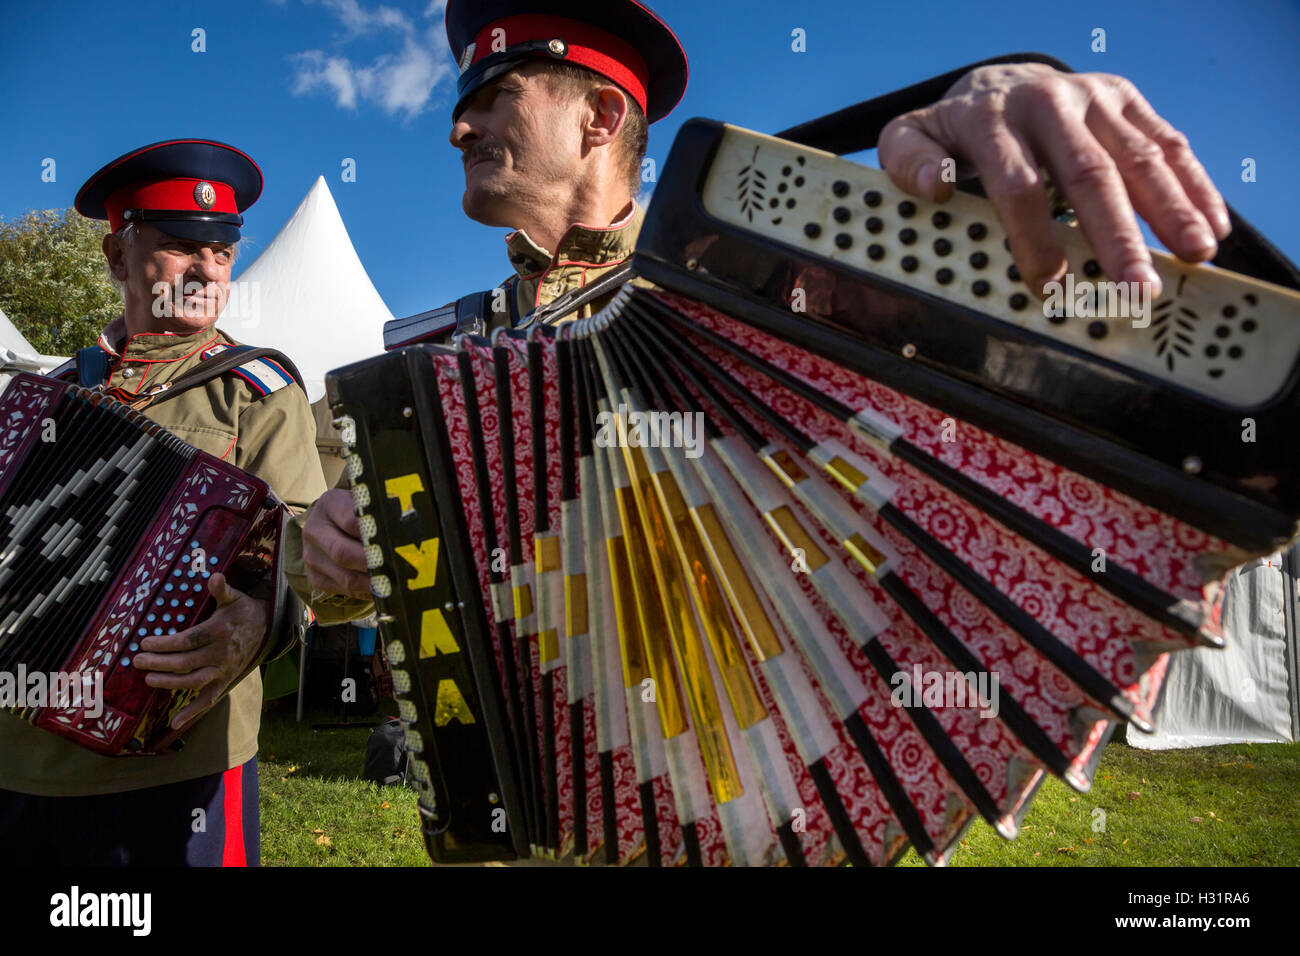 Kosaken spielen ein Knopfakkordeon während der jährlichen Festivals "Kosakensiedlung - Moskau" in Moskau Zarizyno Park, Russland Stockfoto